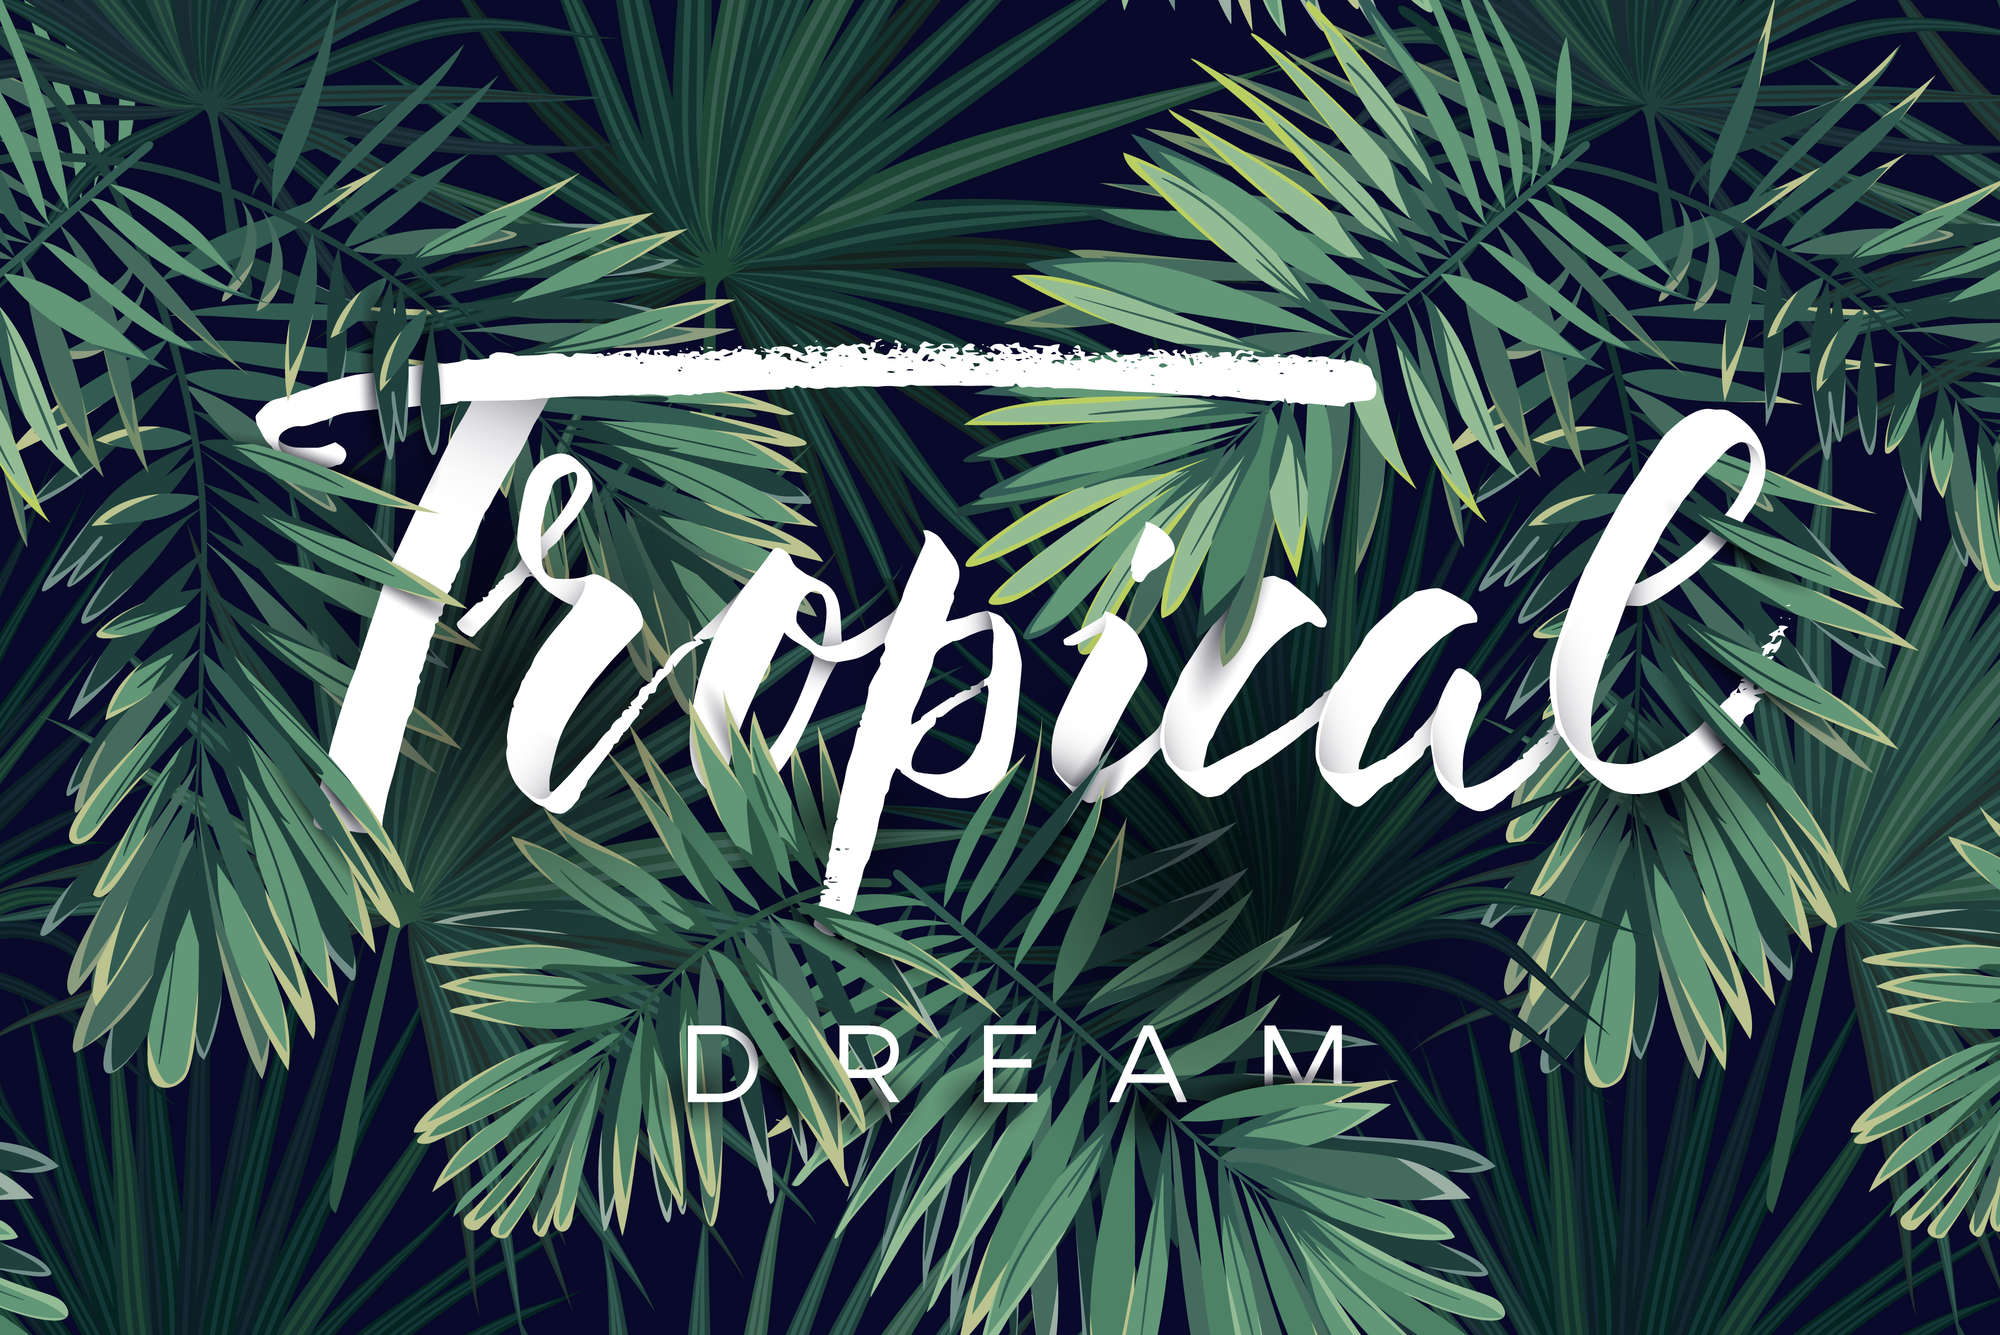             Grafisch behangpapier "Tropical Dream" belettering op parelmoer gladde fleece
        